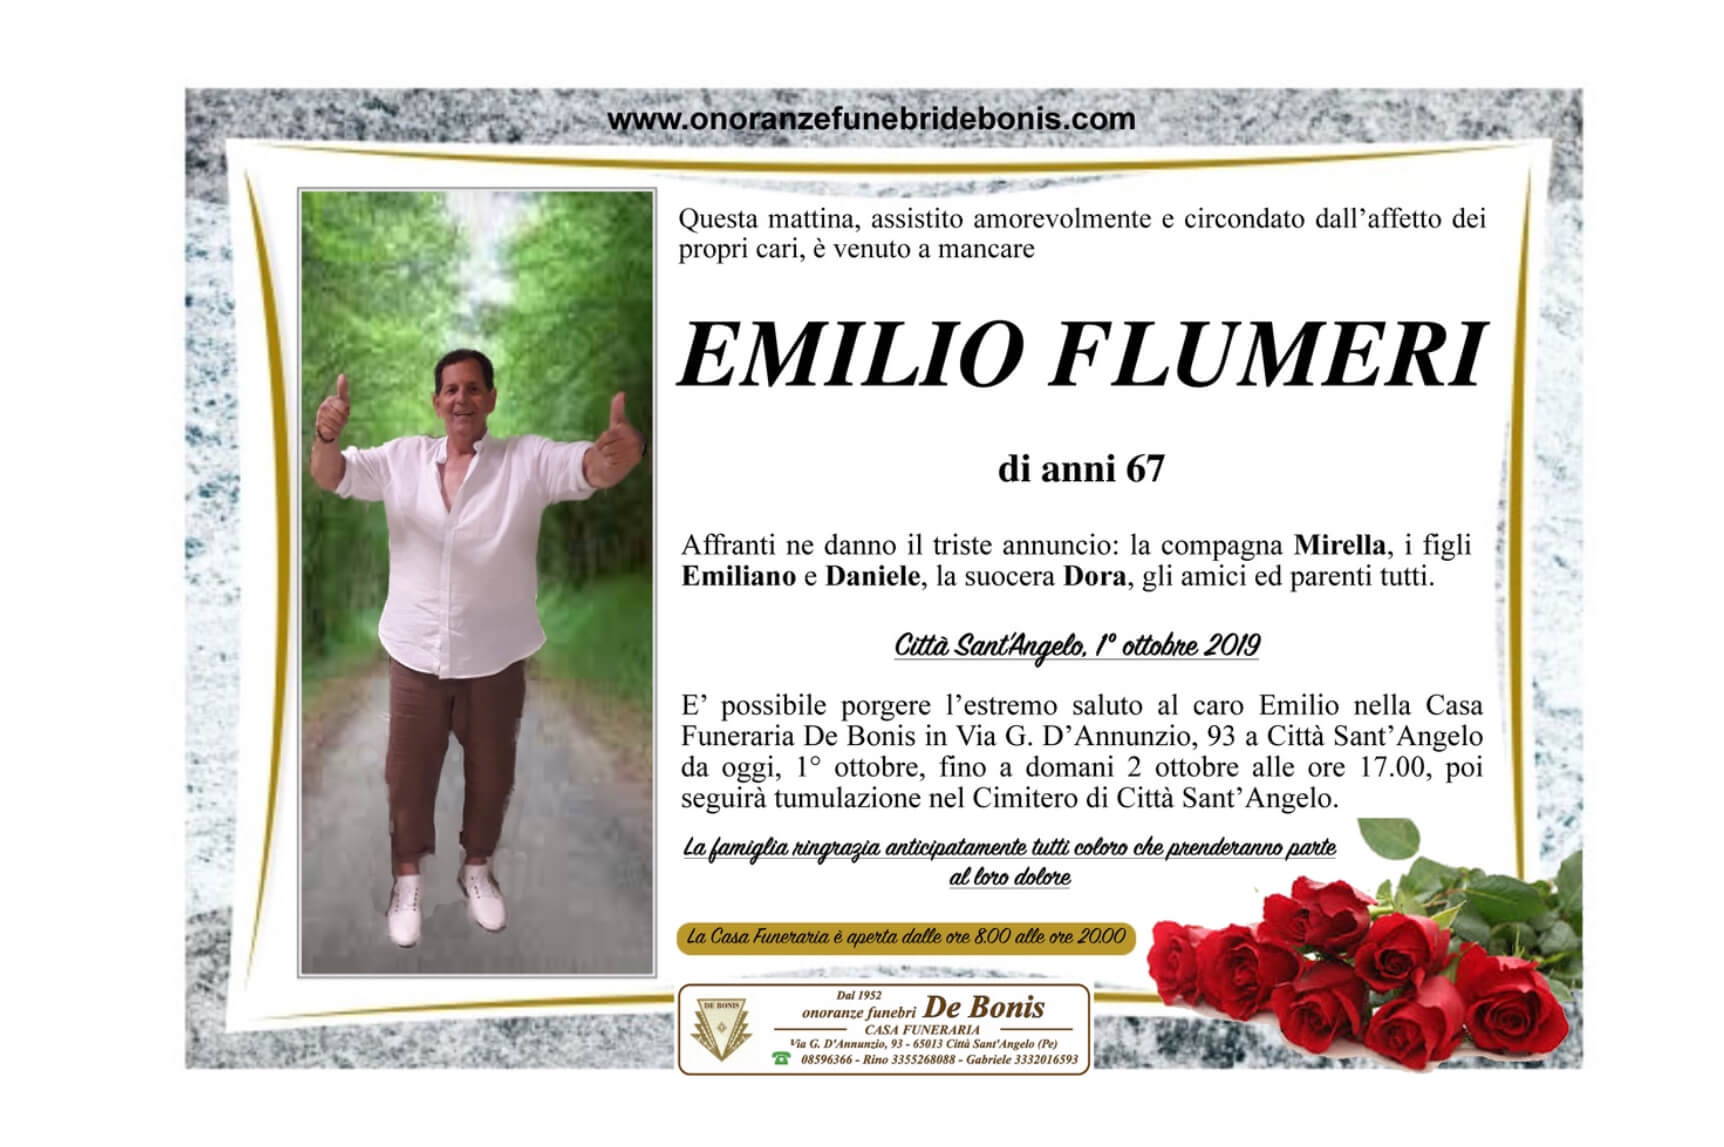 Emilio Flumeri